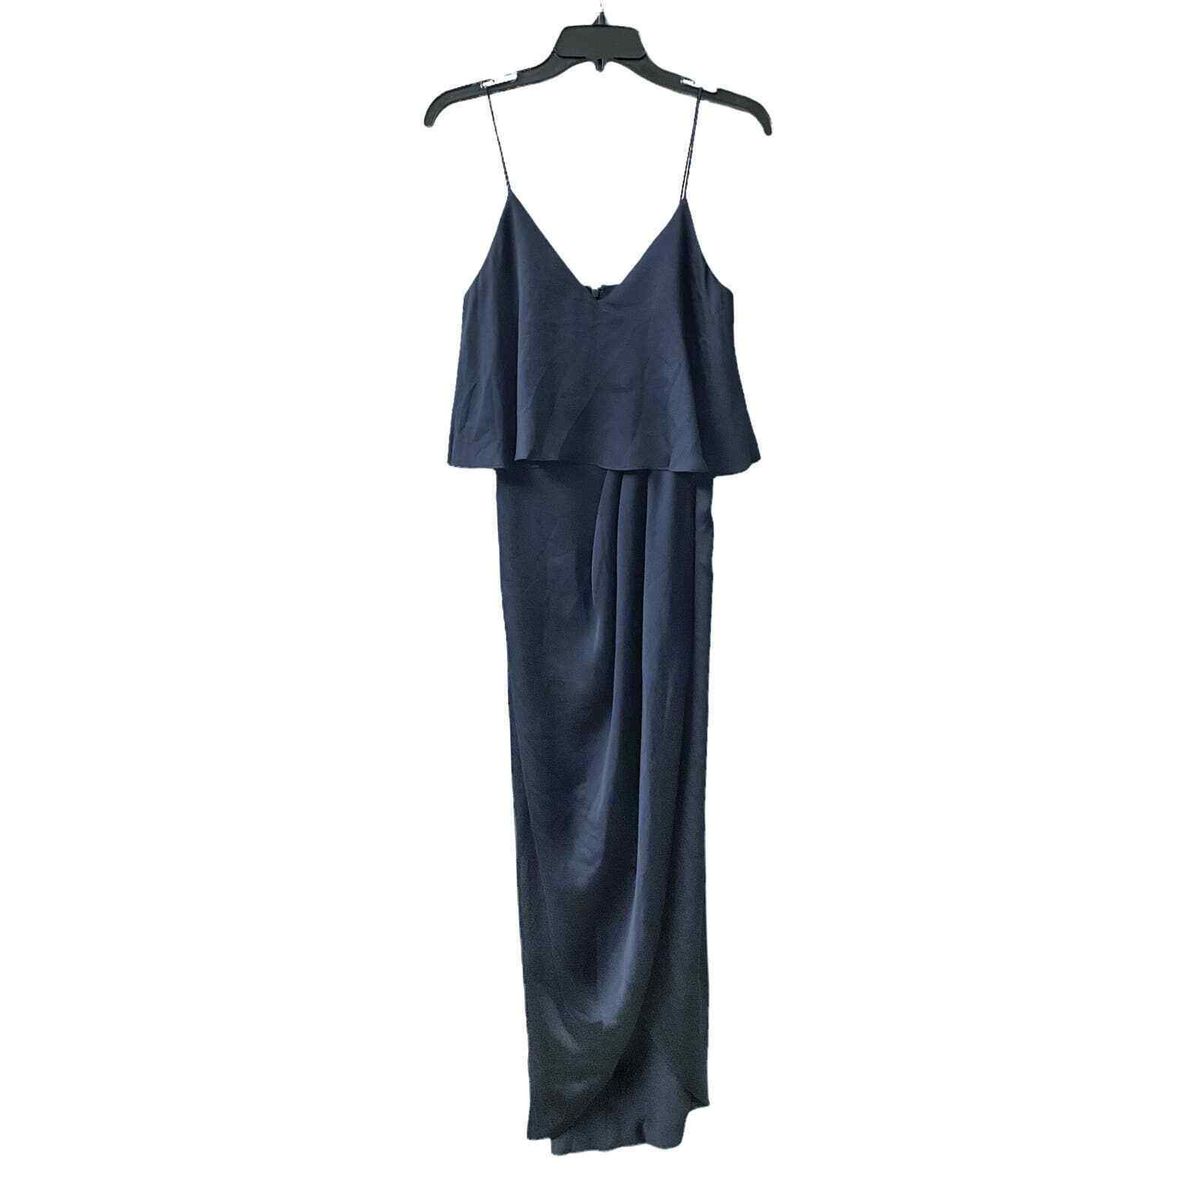 Style SJ3499 Shona Joy Size 2 Satin Blue Side Slit Dress on Queenly